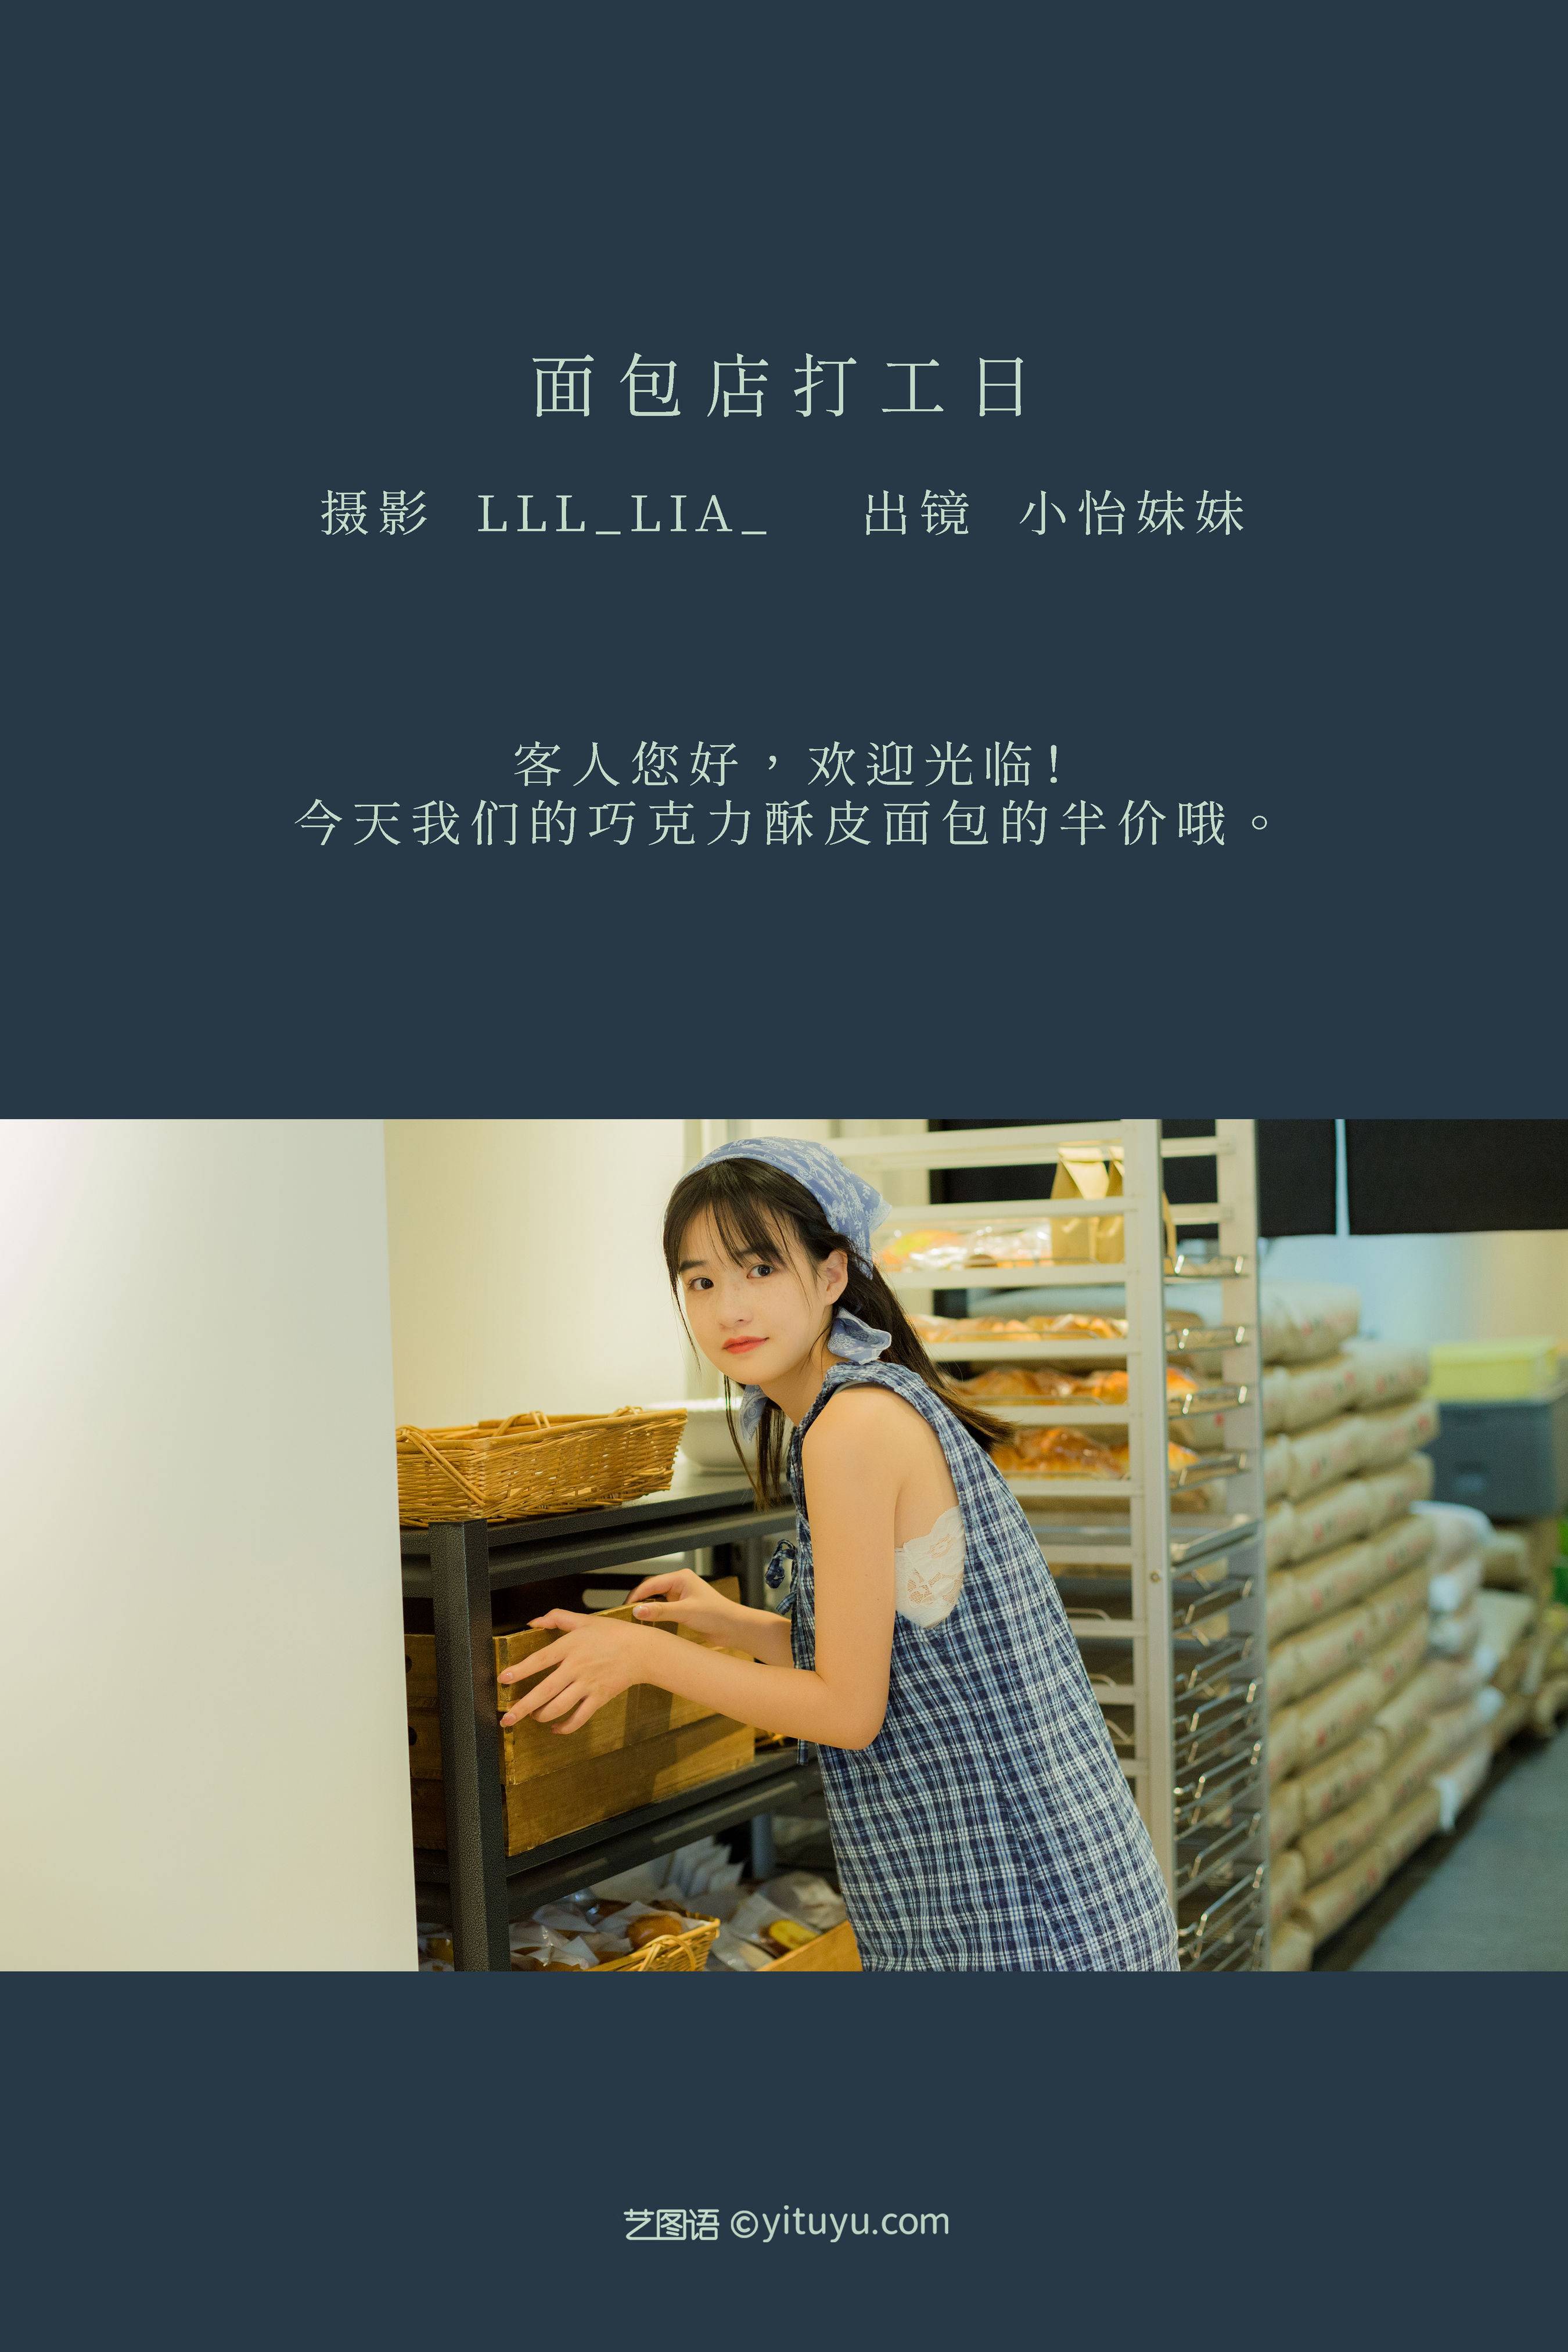 面包店打工日 日系 写真集 少女&YiTuYu艺图语-1